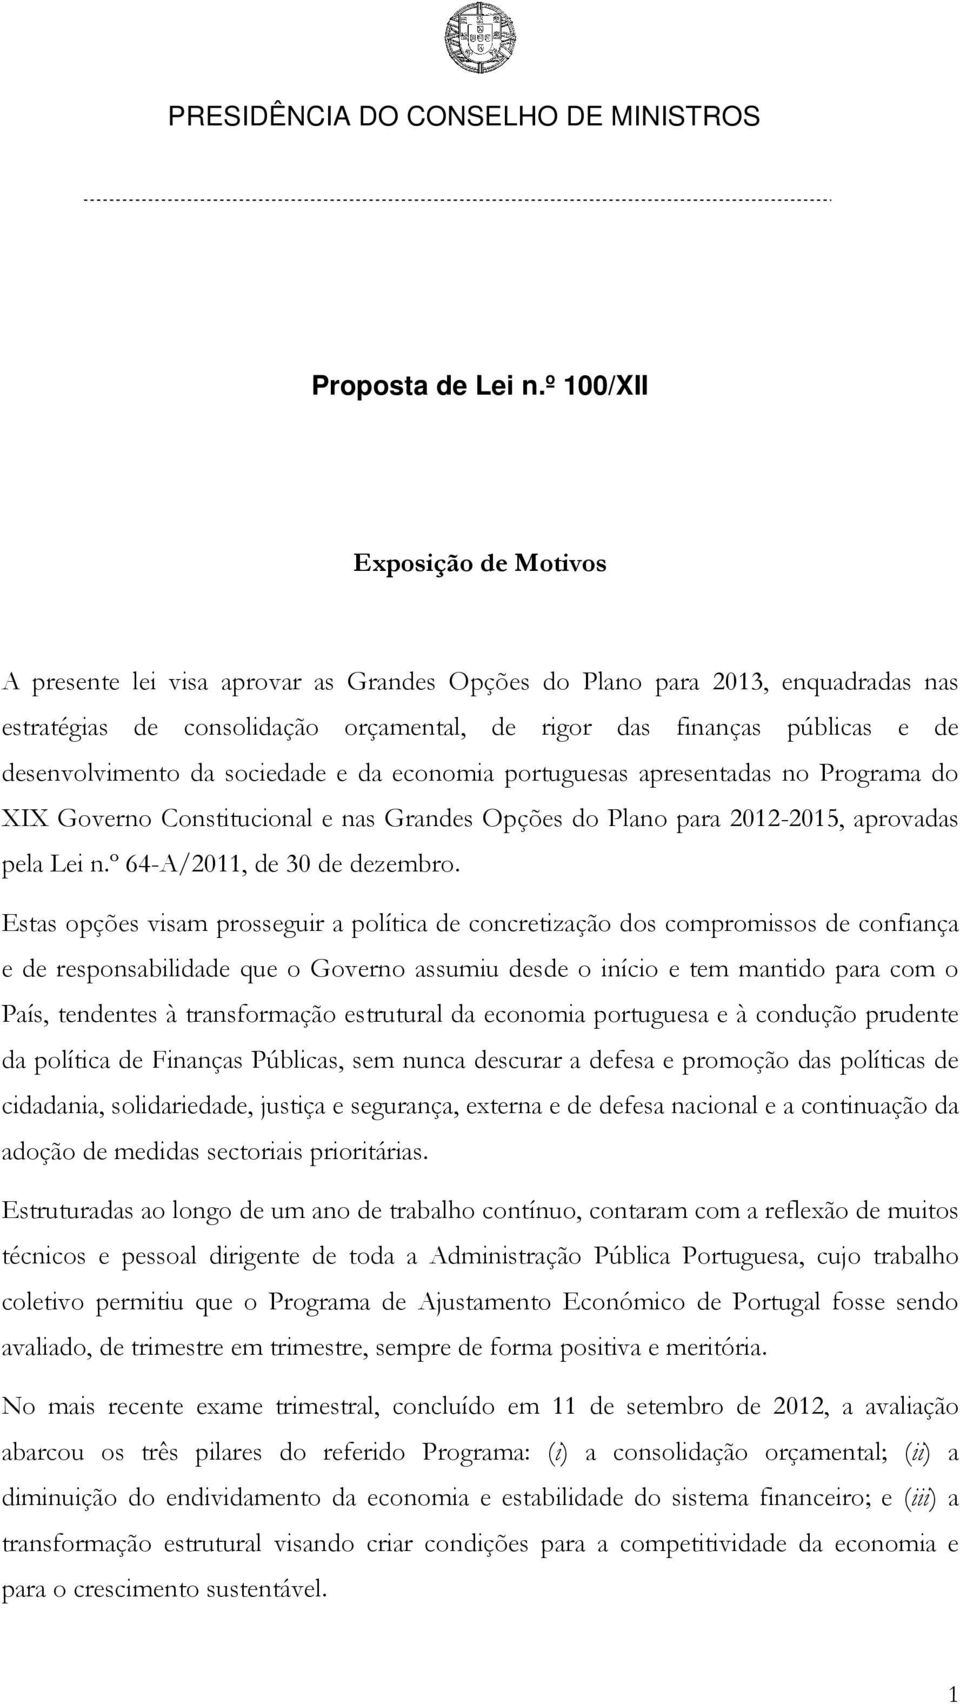 desenvolvimento da sociedade e da economia portuguesas apresentadas no Programa do XIX Governo Constitucional e nas Grandes Opções do Plano para 2012-2015, aprovadas pela Lei n.